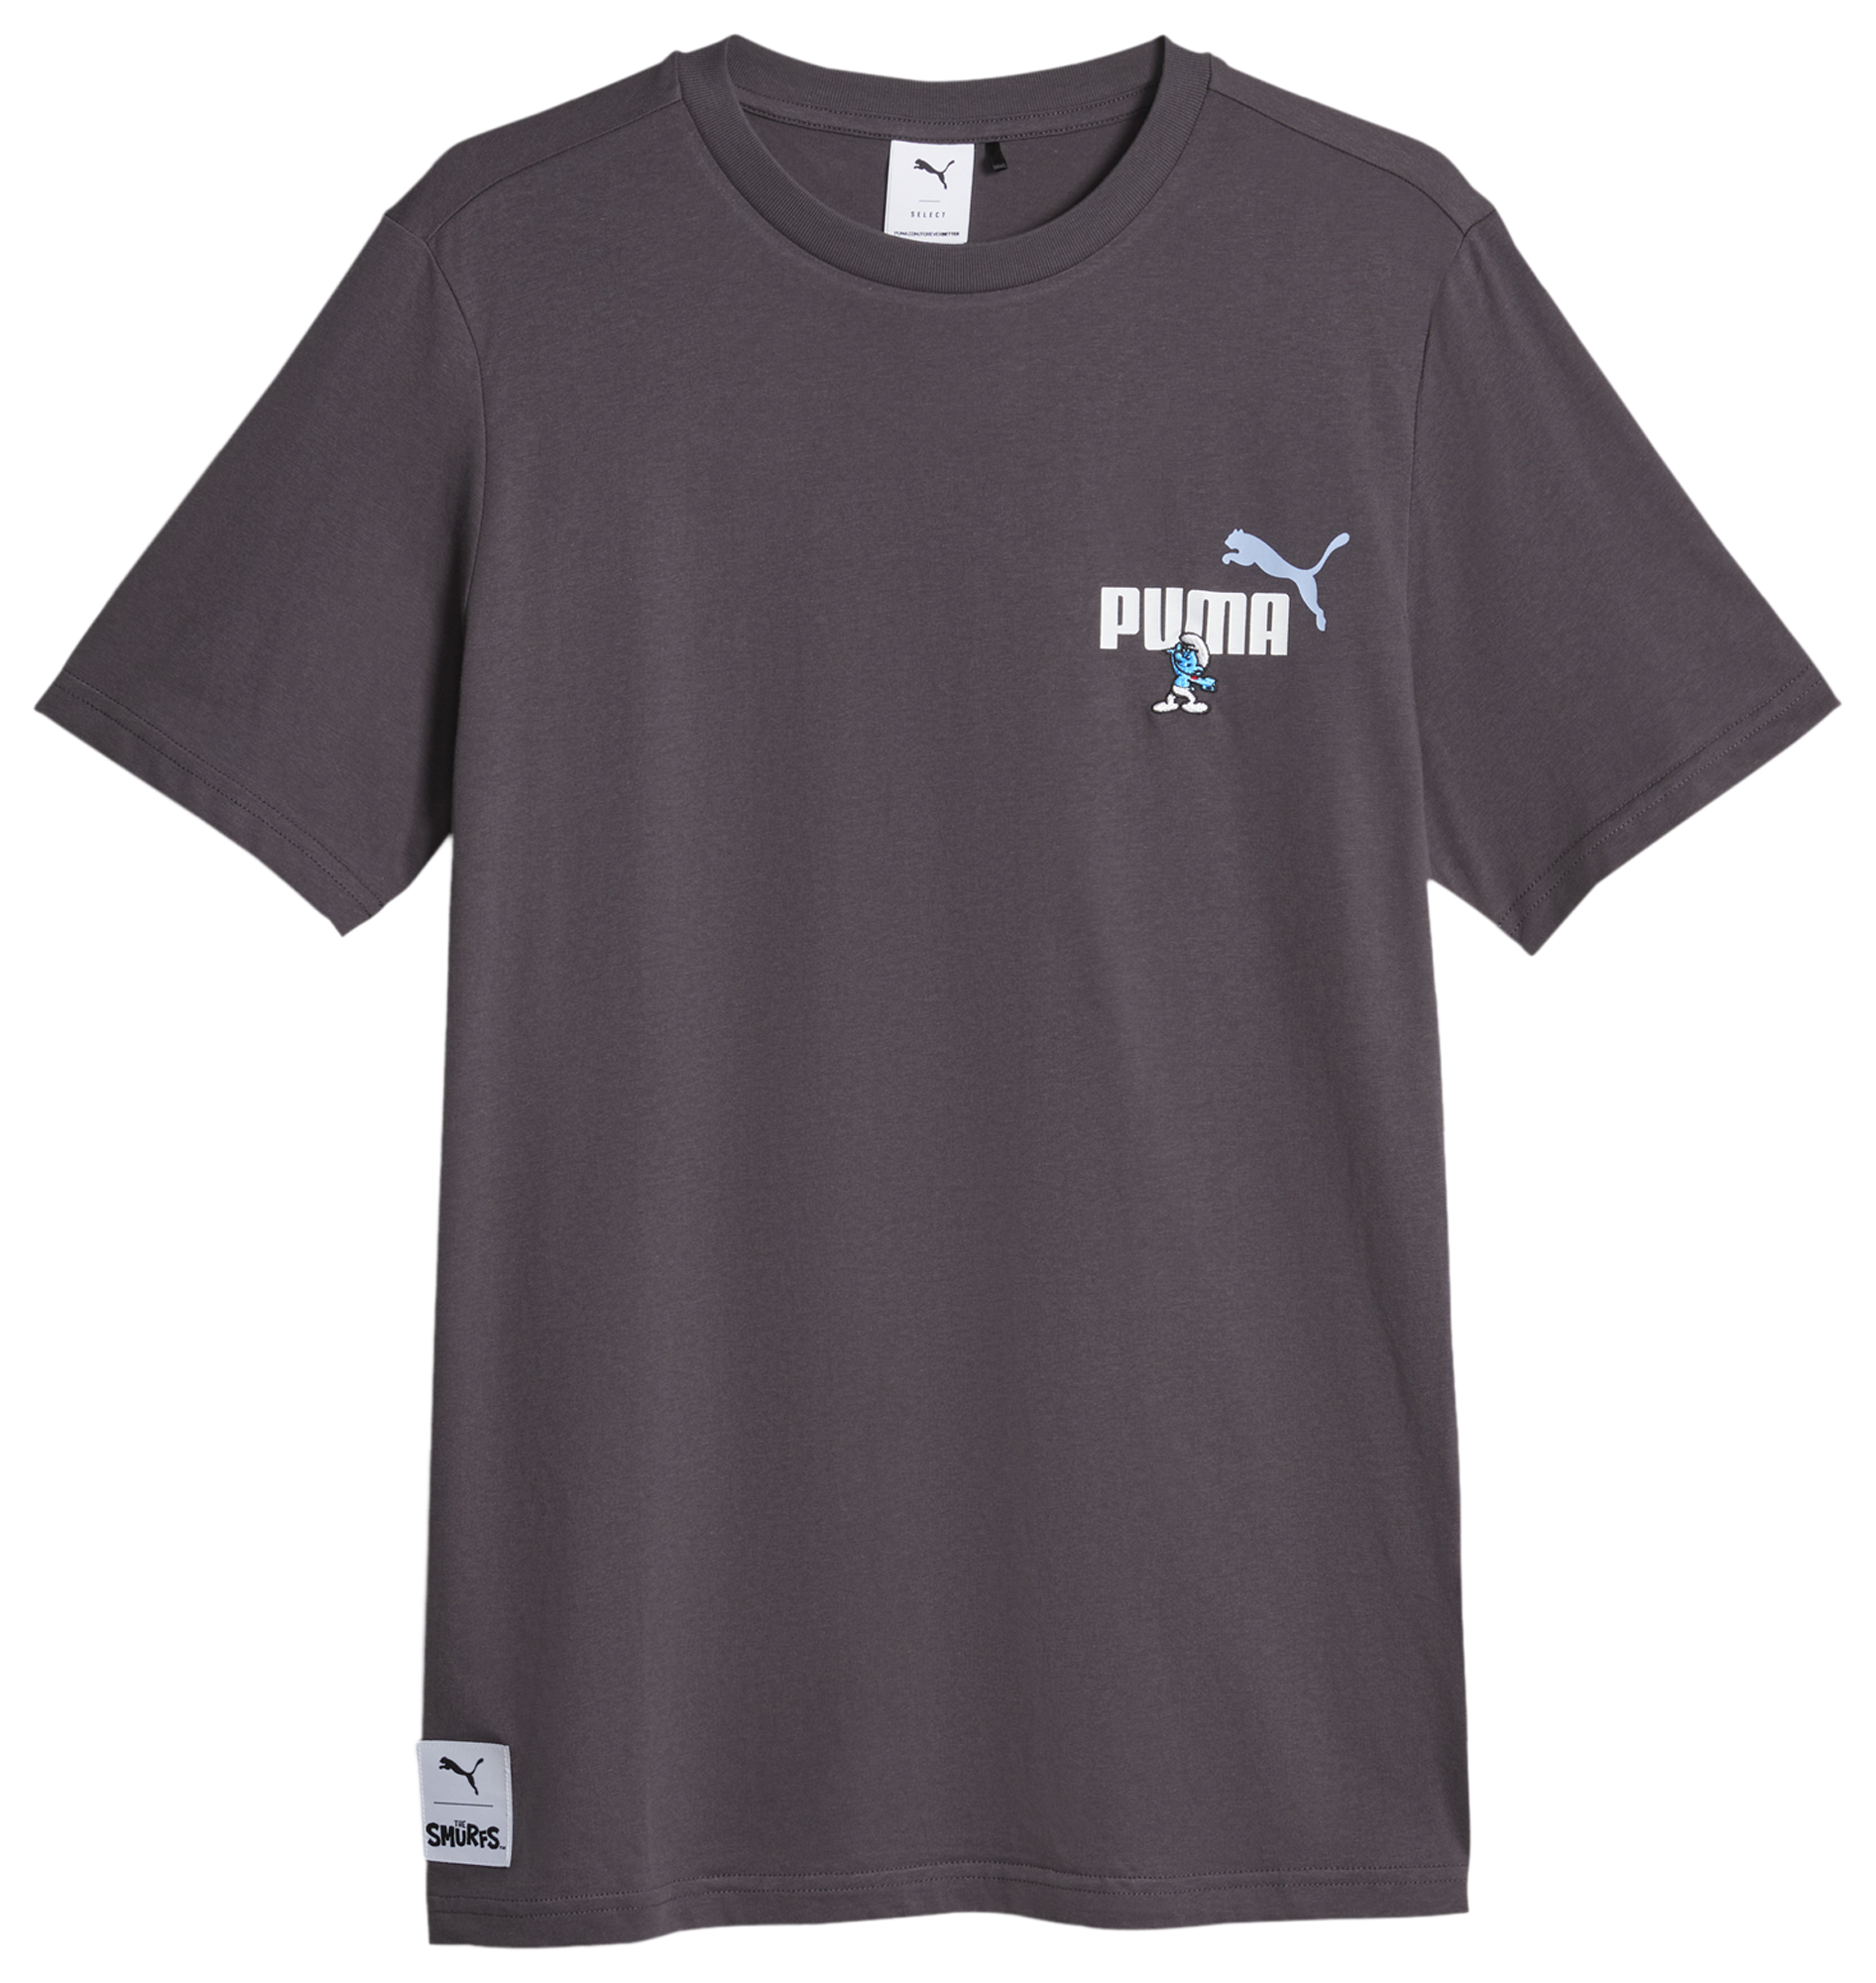 PUMA Smurfs T-Shirt